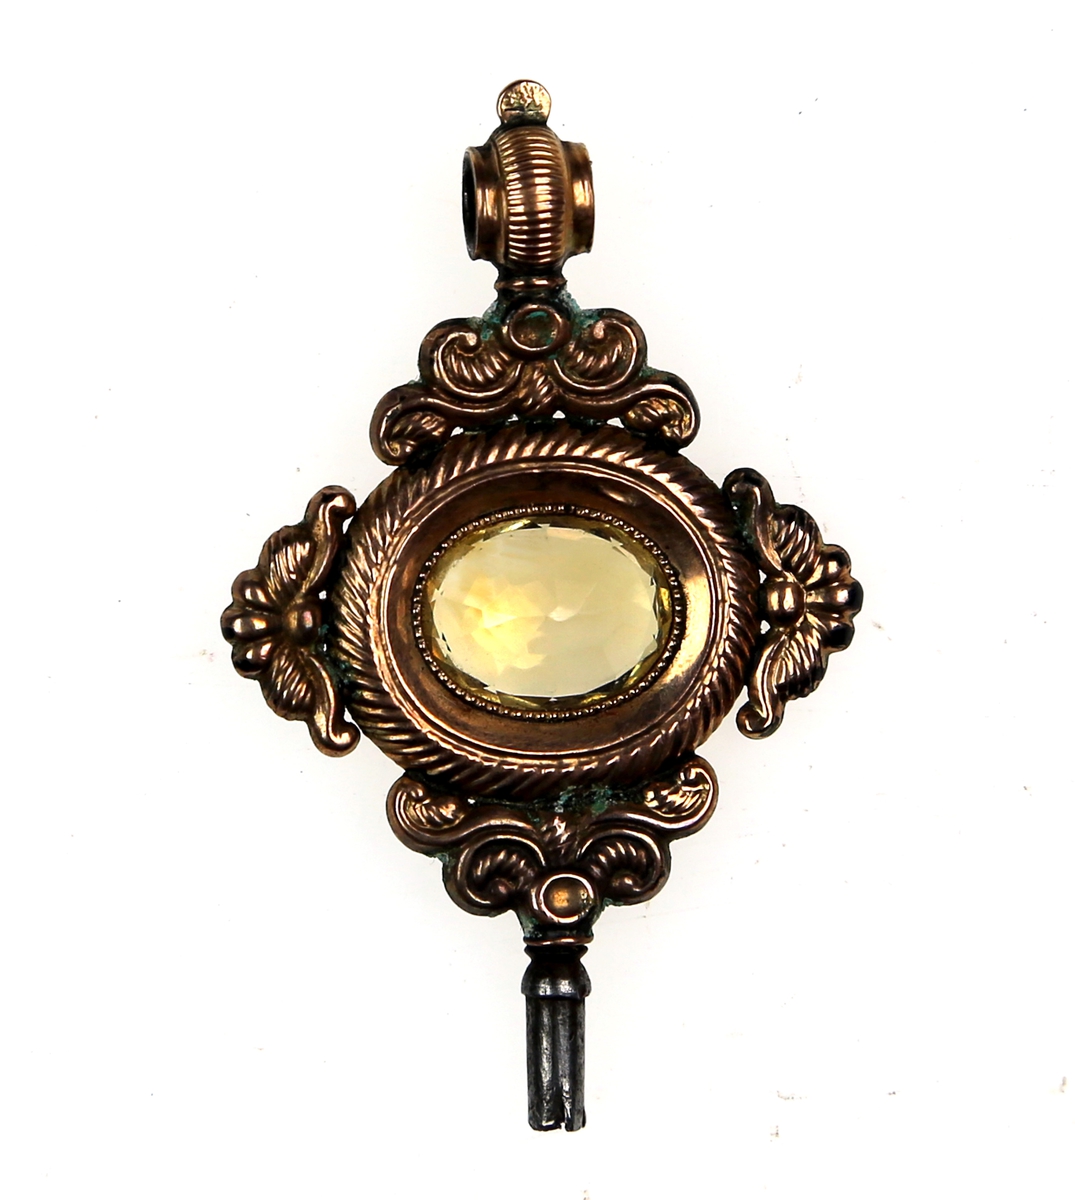 Nøkkel støpt i messing eller kobber med fasettslipt glass eller sten som dekor i midten